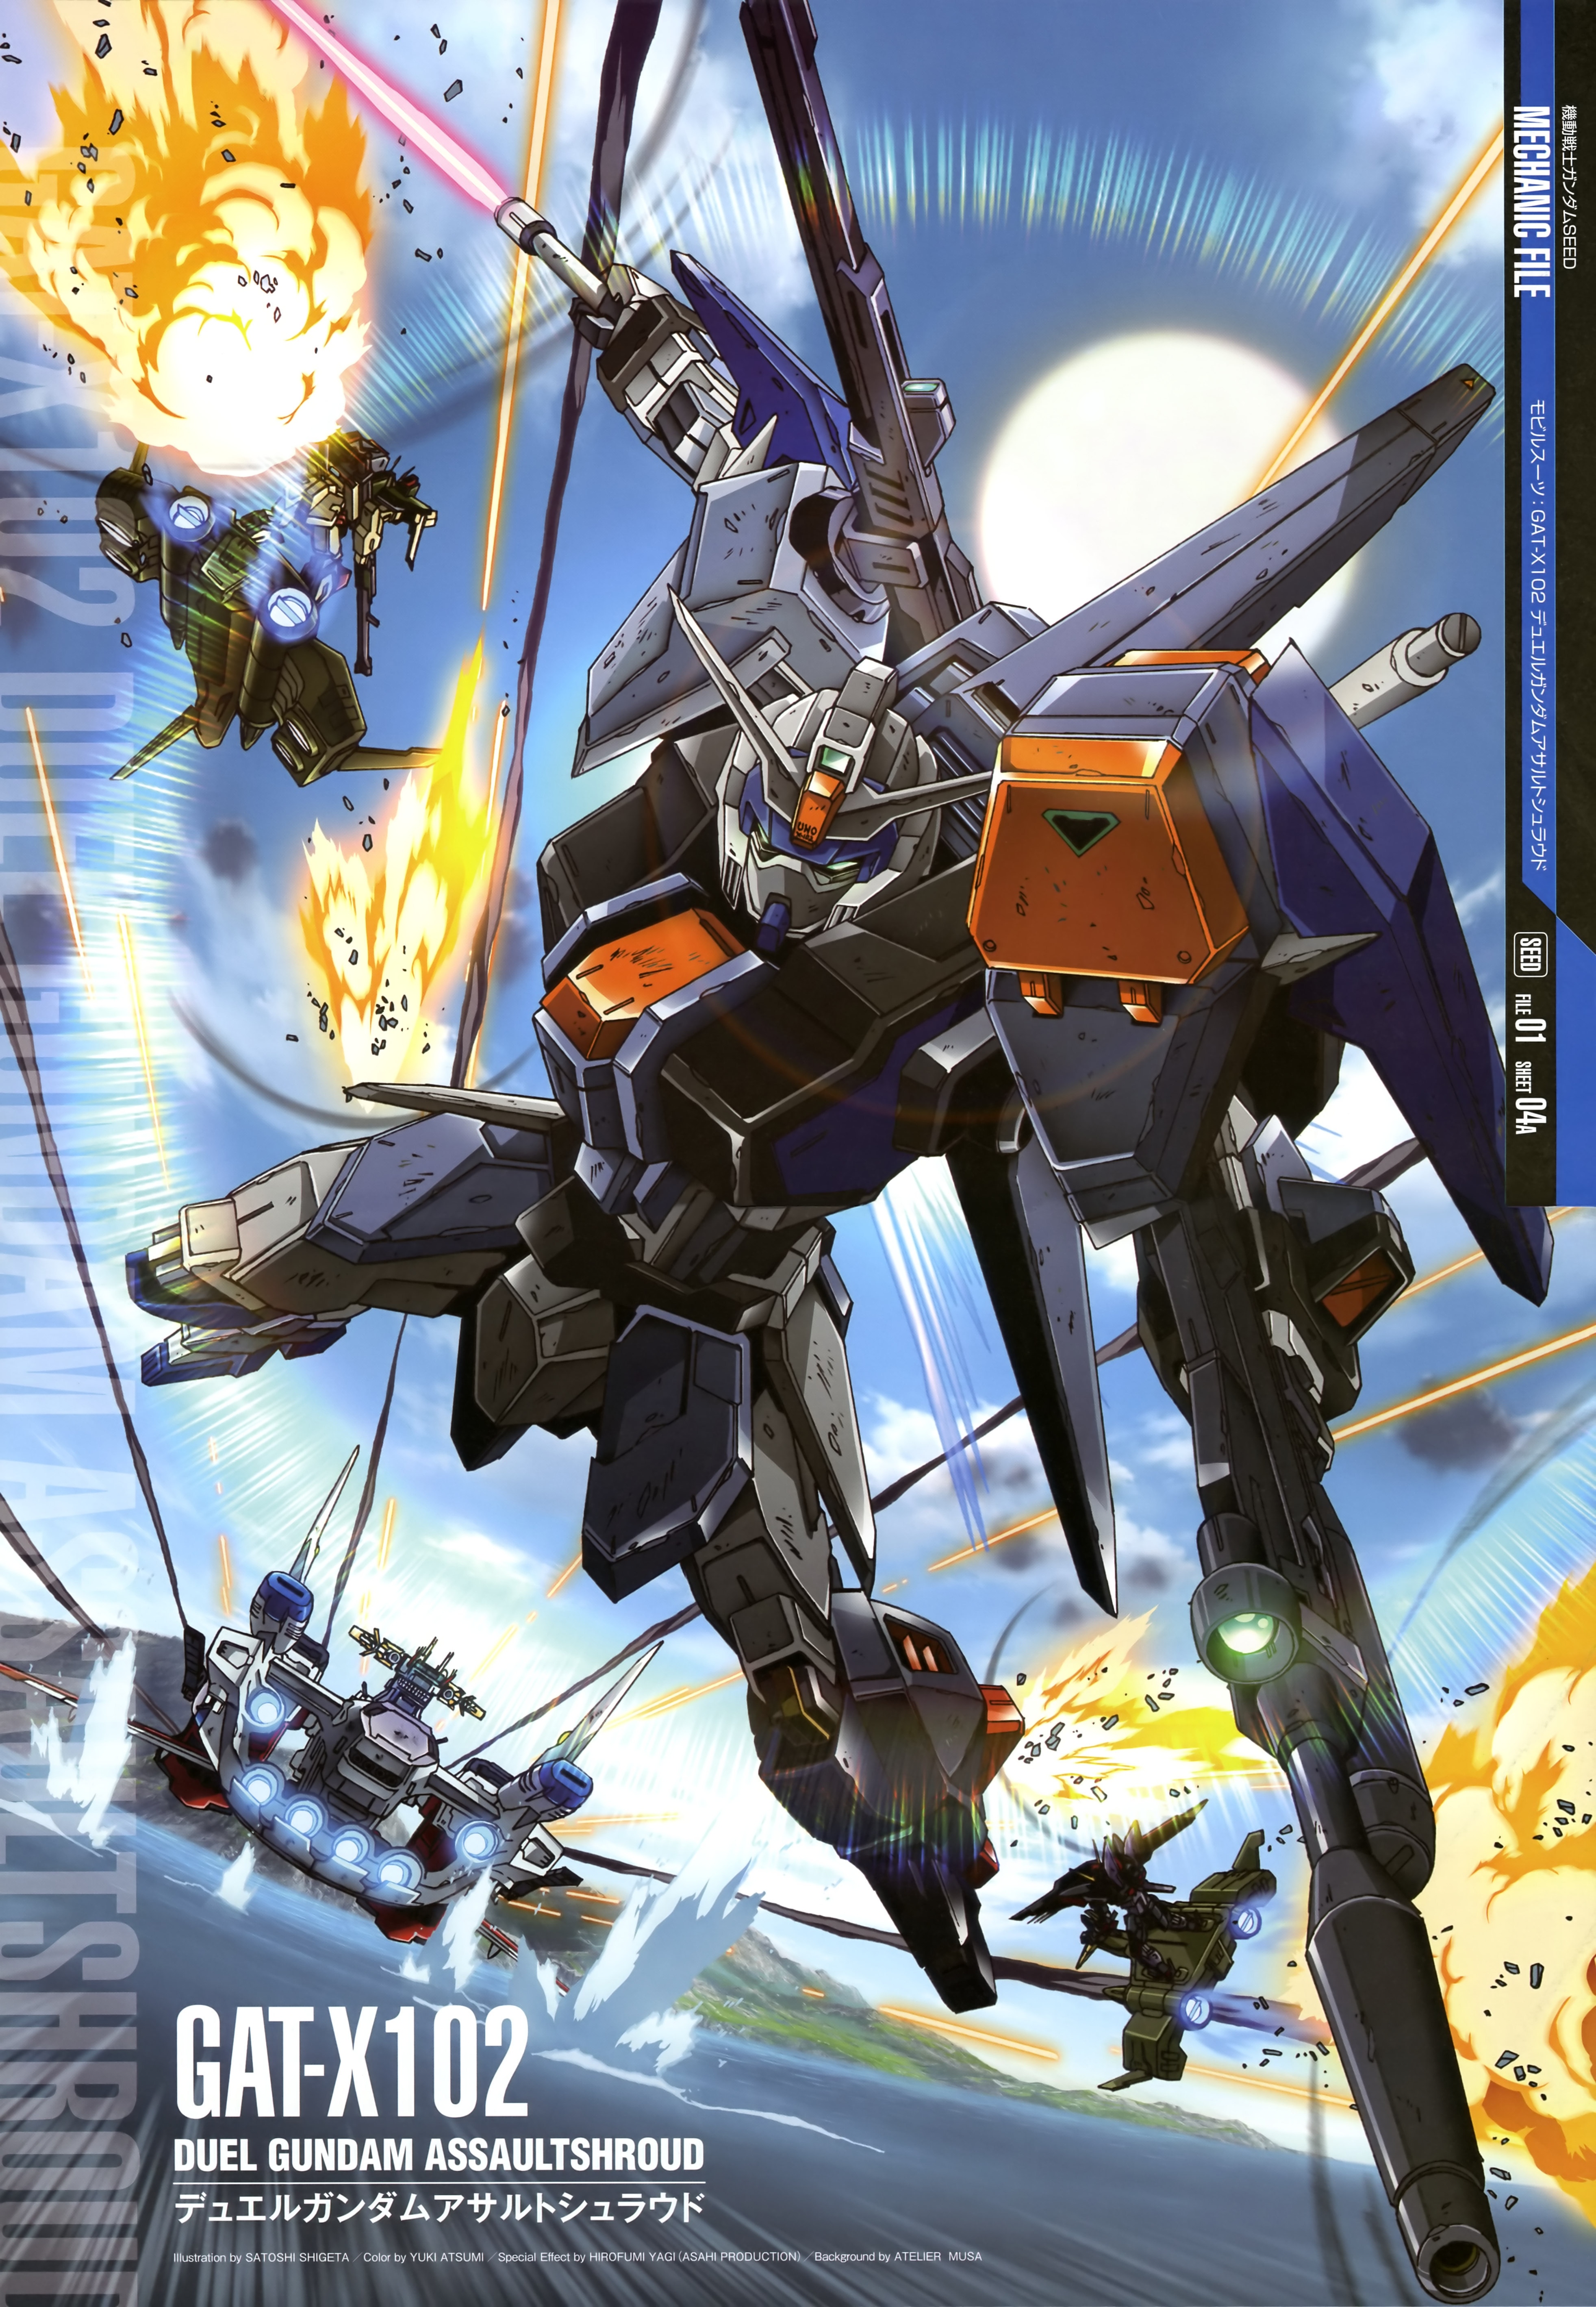 Buster Gundam Anime Mechs Gundam Mobile Suit Gundam SEED Super Robot Taisen Artwork Digital Art Duel 3927x5675